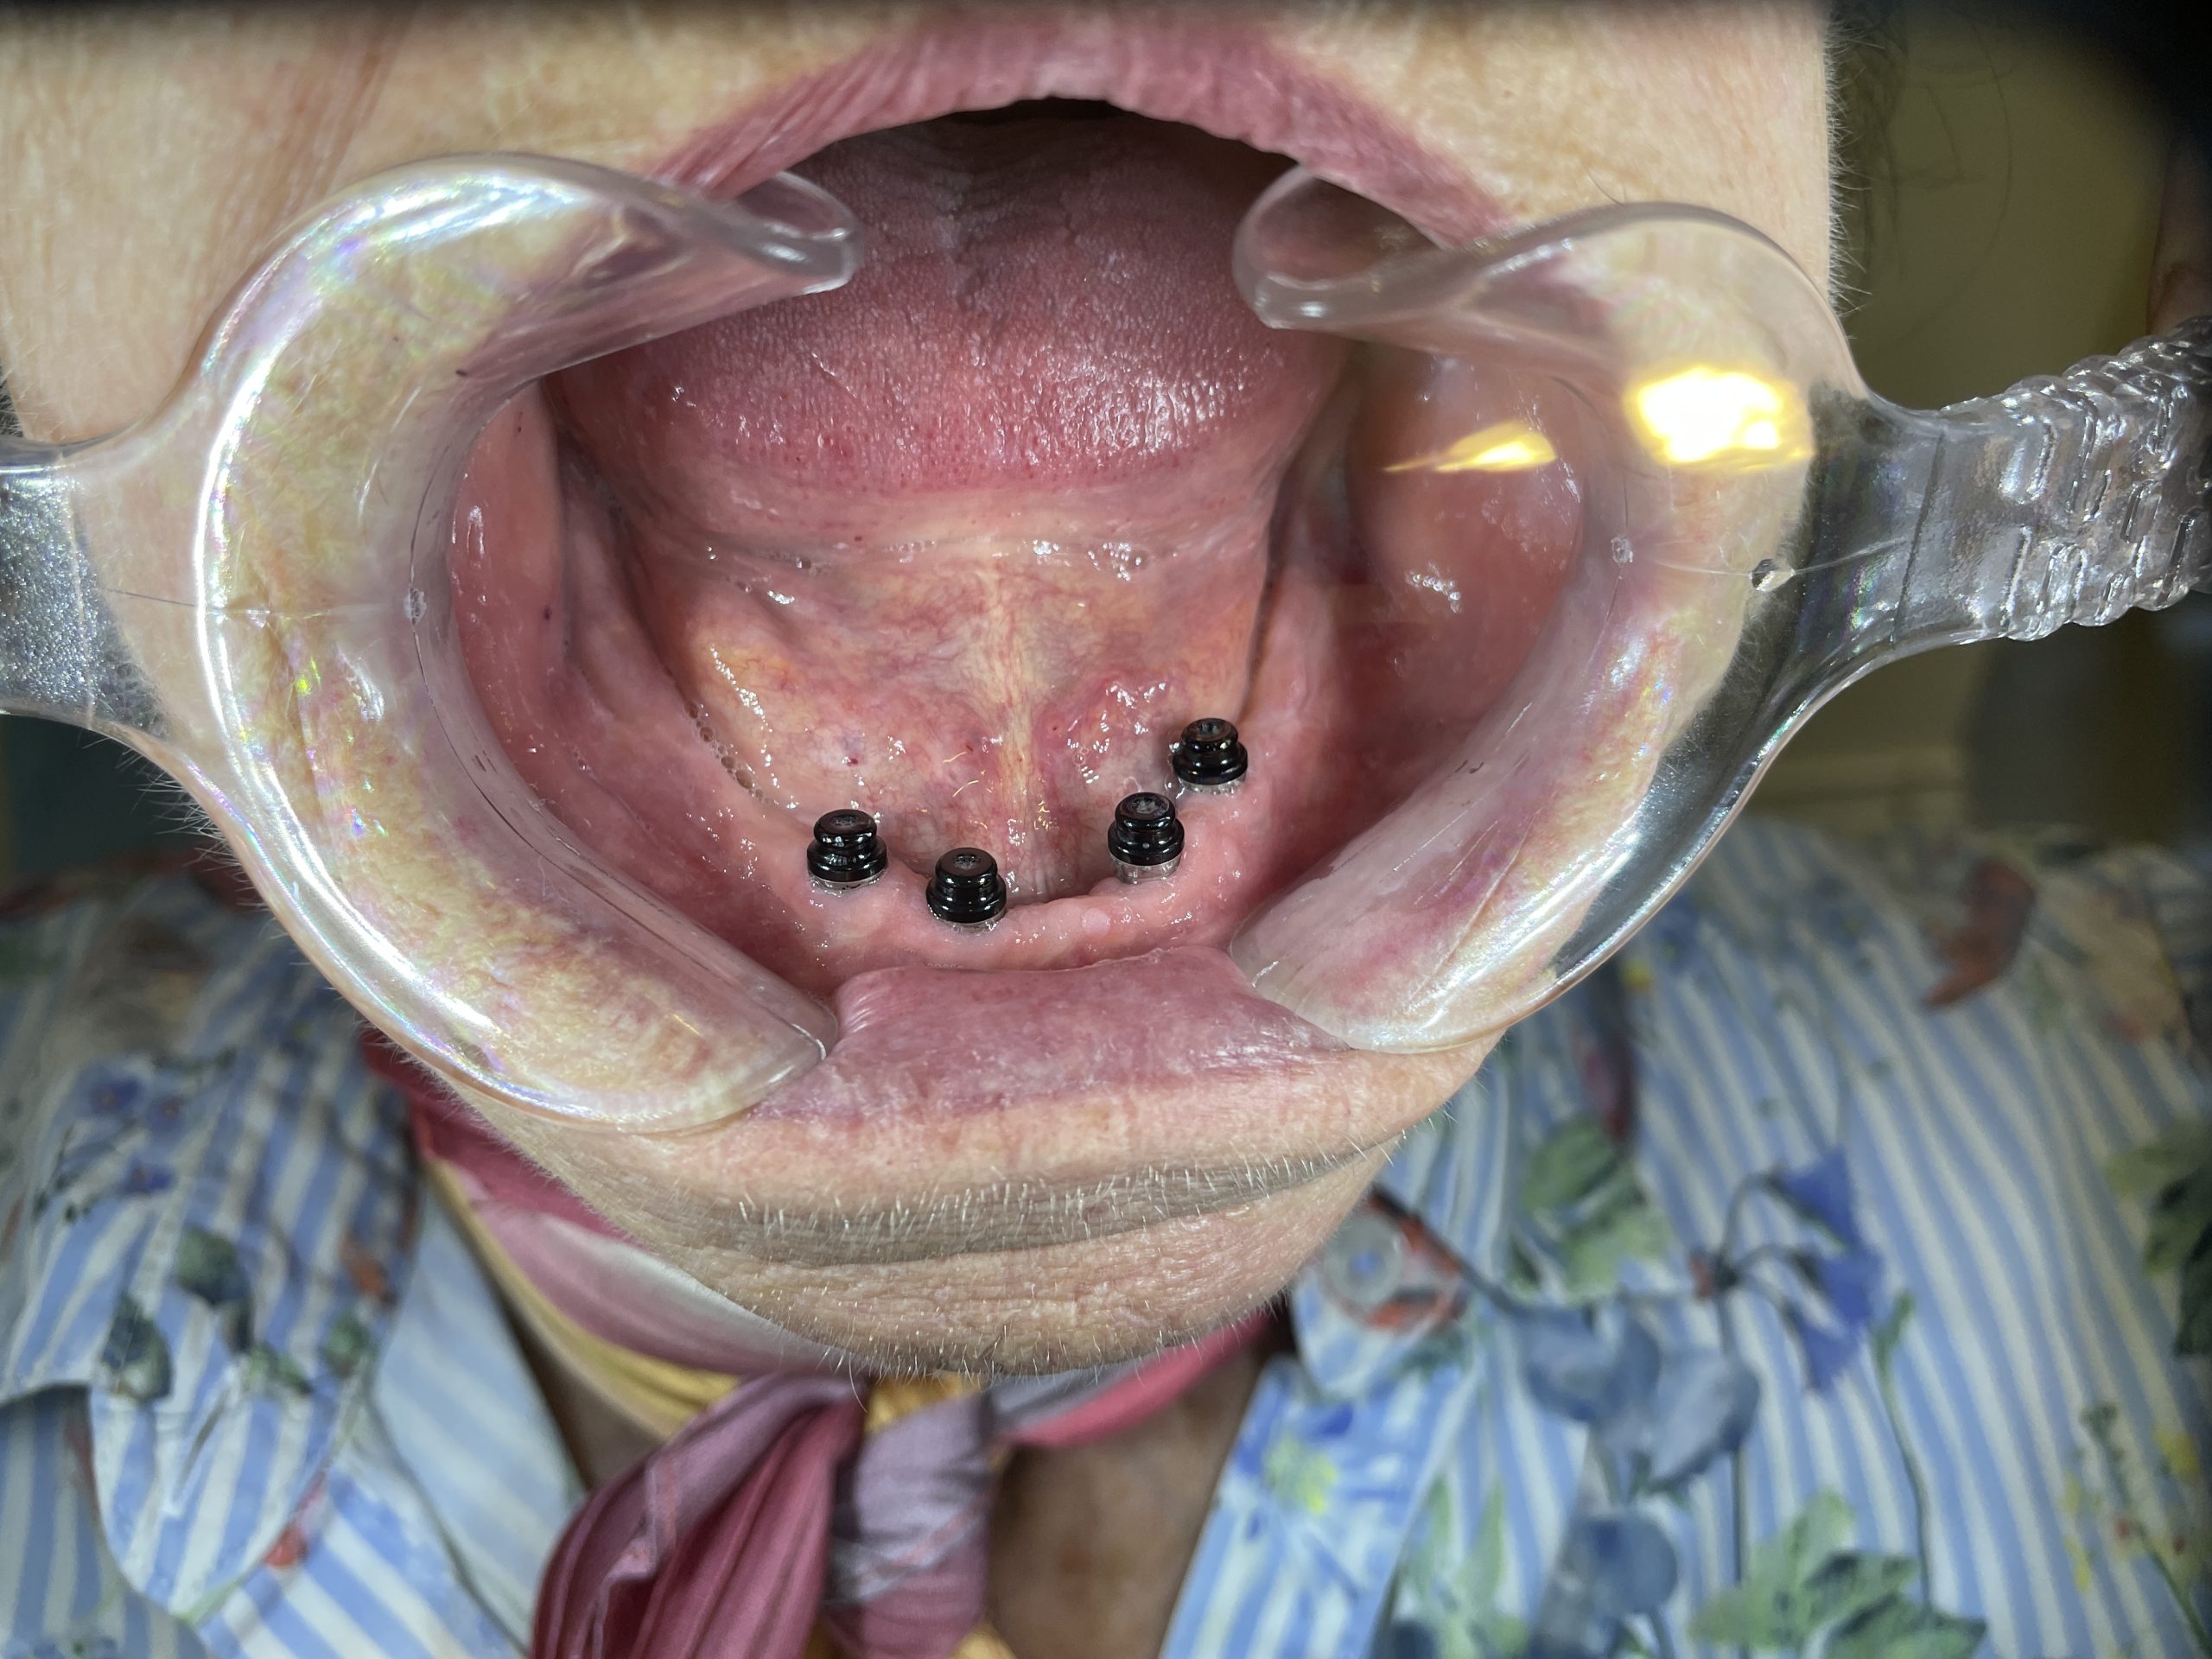 implantat åben undermund